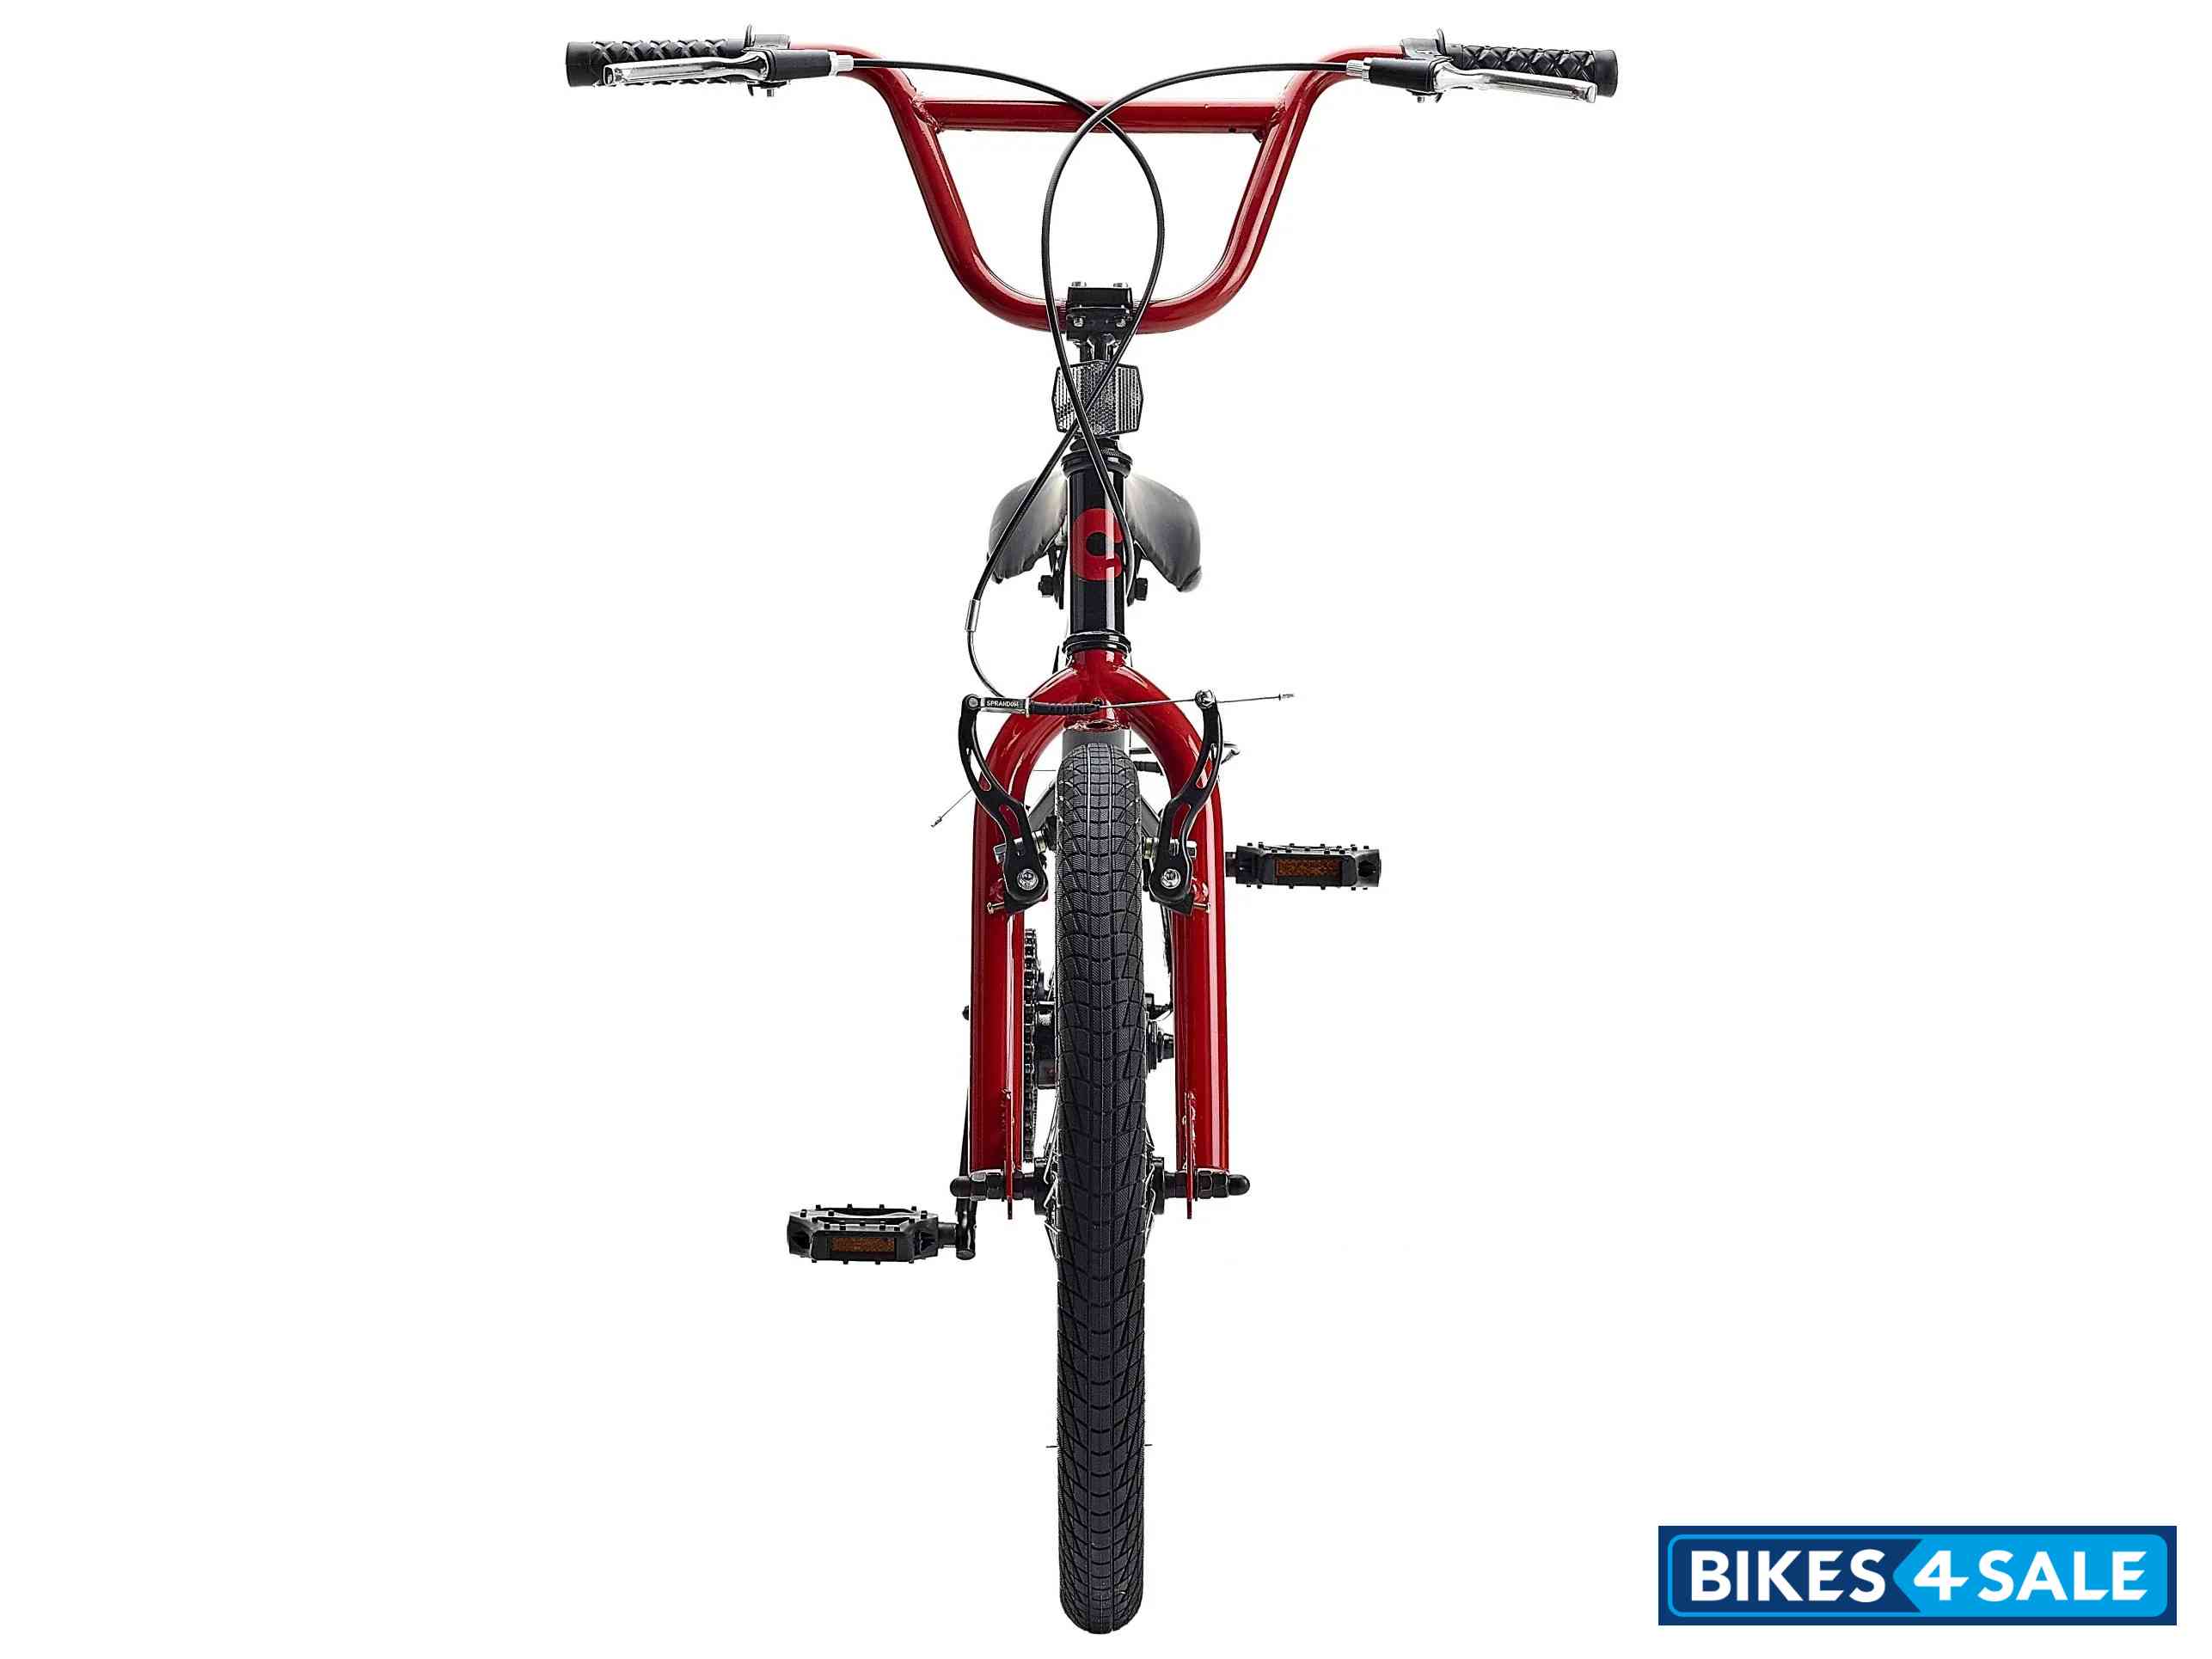 Insync Skyline 20 Wheel Boys BMX Bicycle